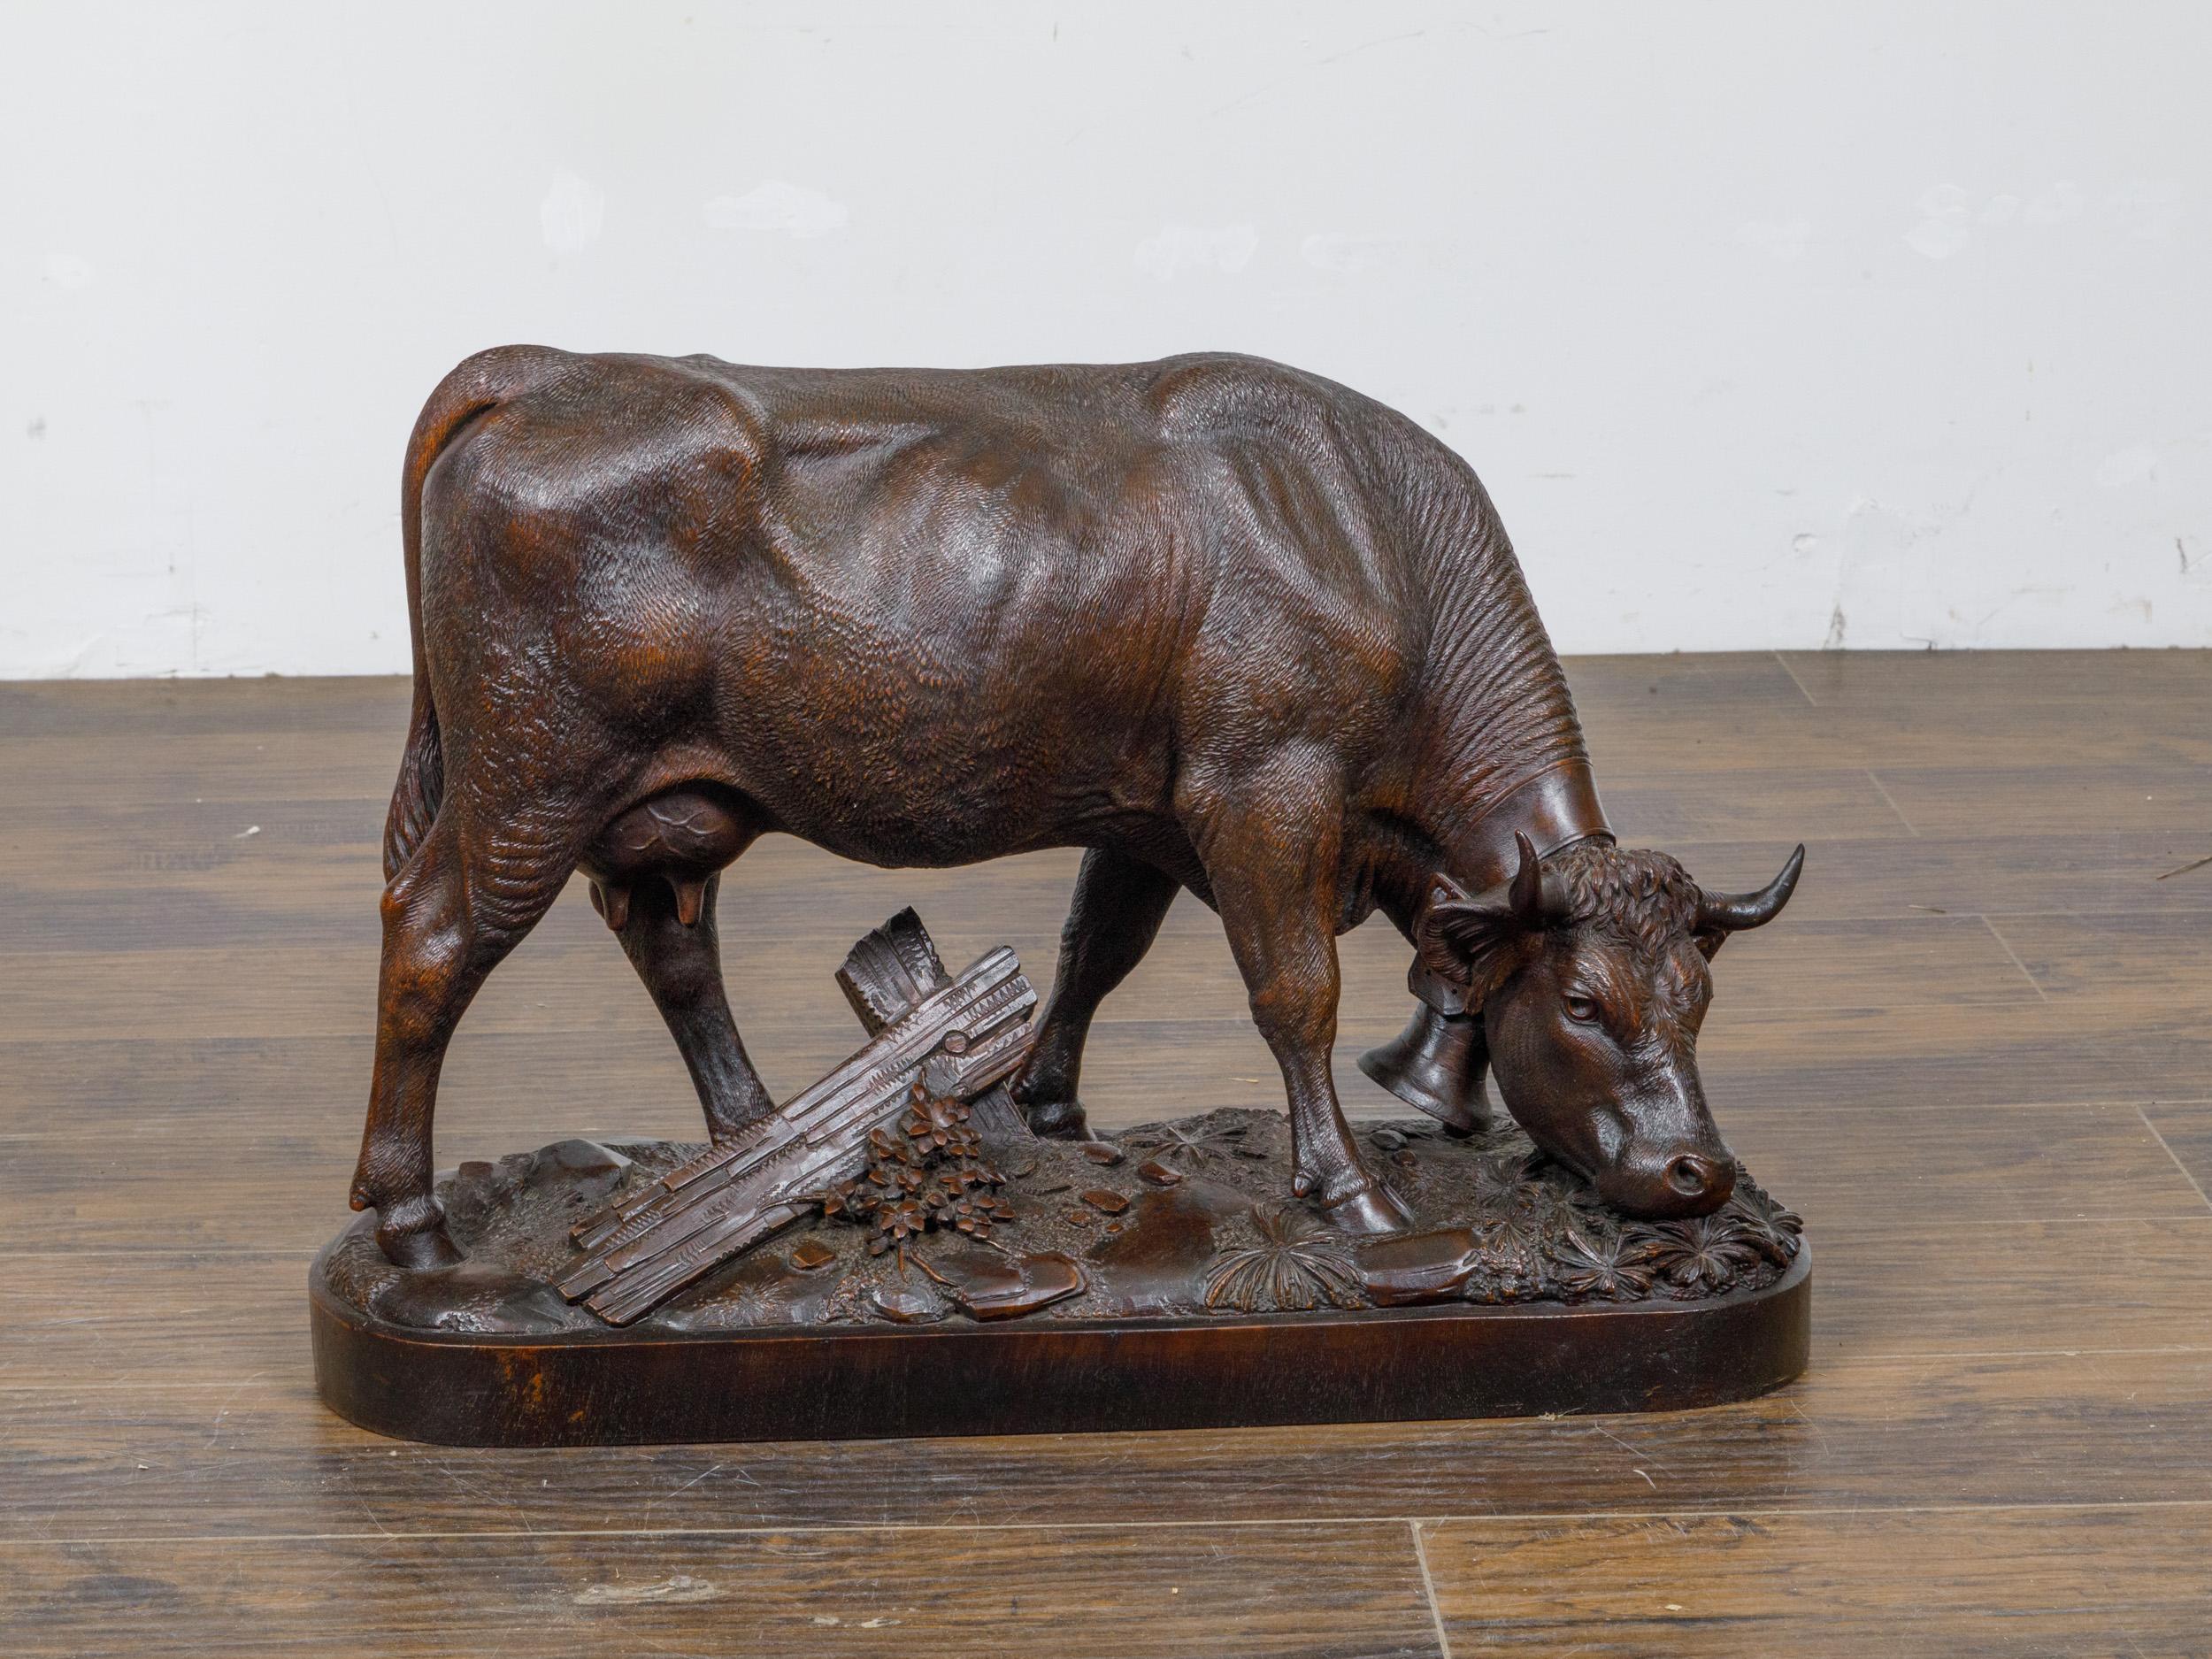 Vache en bois sculptée à la main, datant d'environ 1880, originaire de la Forêt-Noire. Cette vache en bois délicieusement sculptée à la main est un exemple parfait de l'art de la Forêt-Noire, datant d'environ 1880 et provenant de Suisse. La